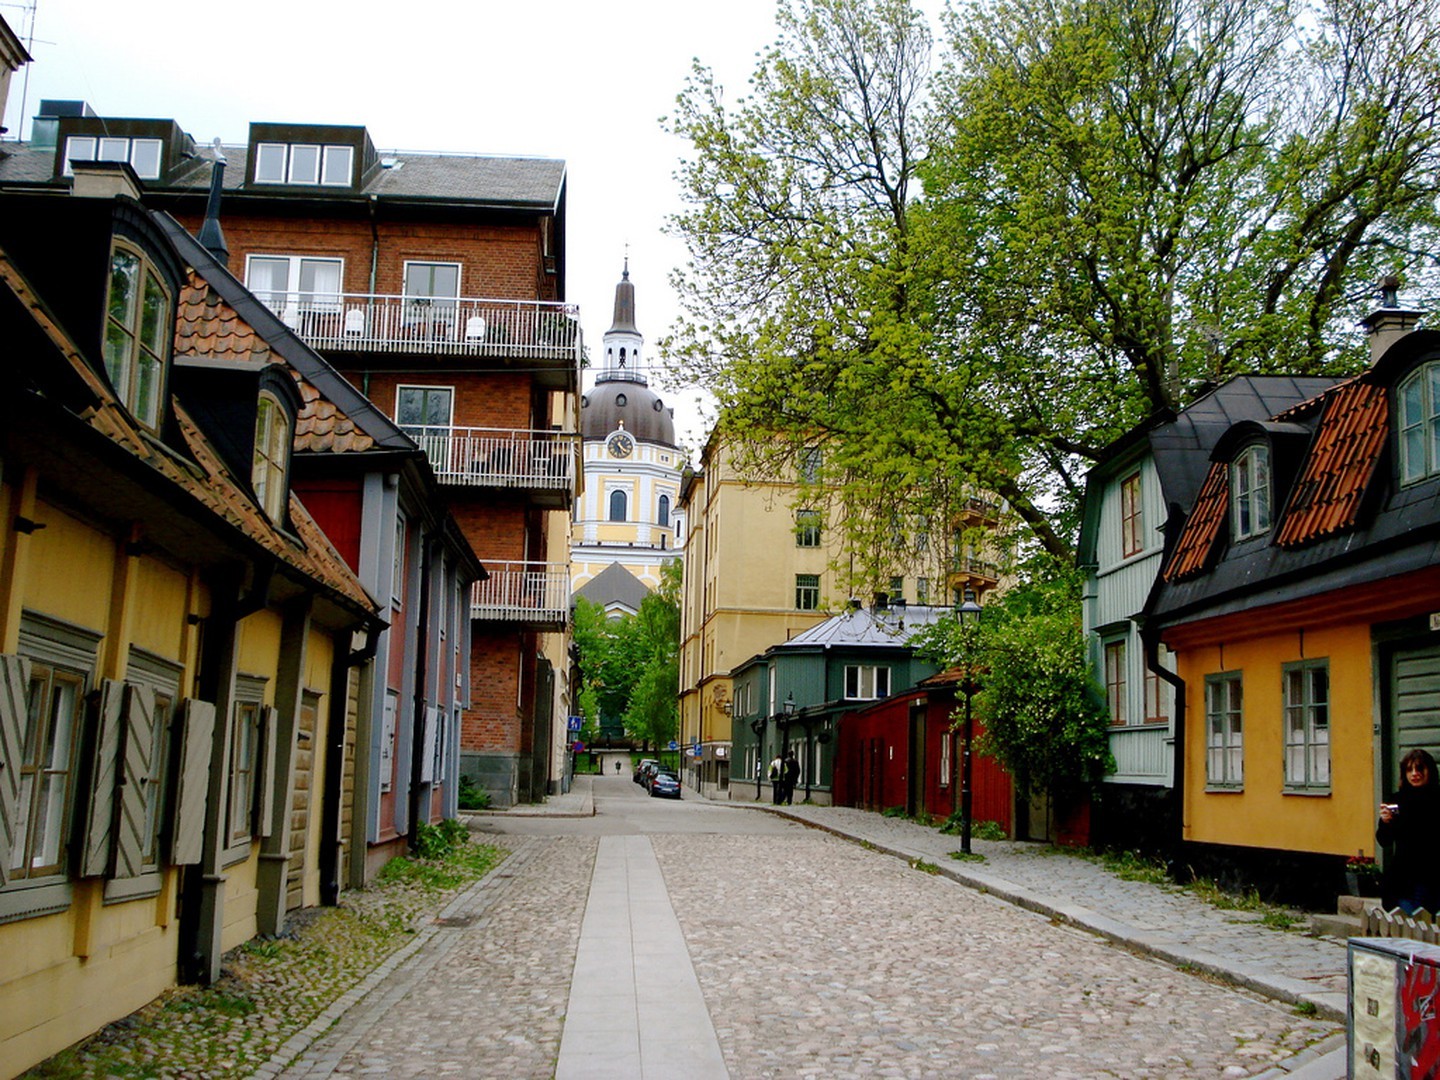 Tìm hiểu về Stockholm bền vững trong chuyến tham quan sinh thái